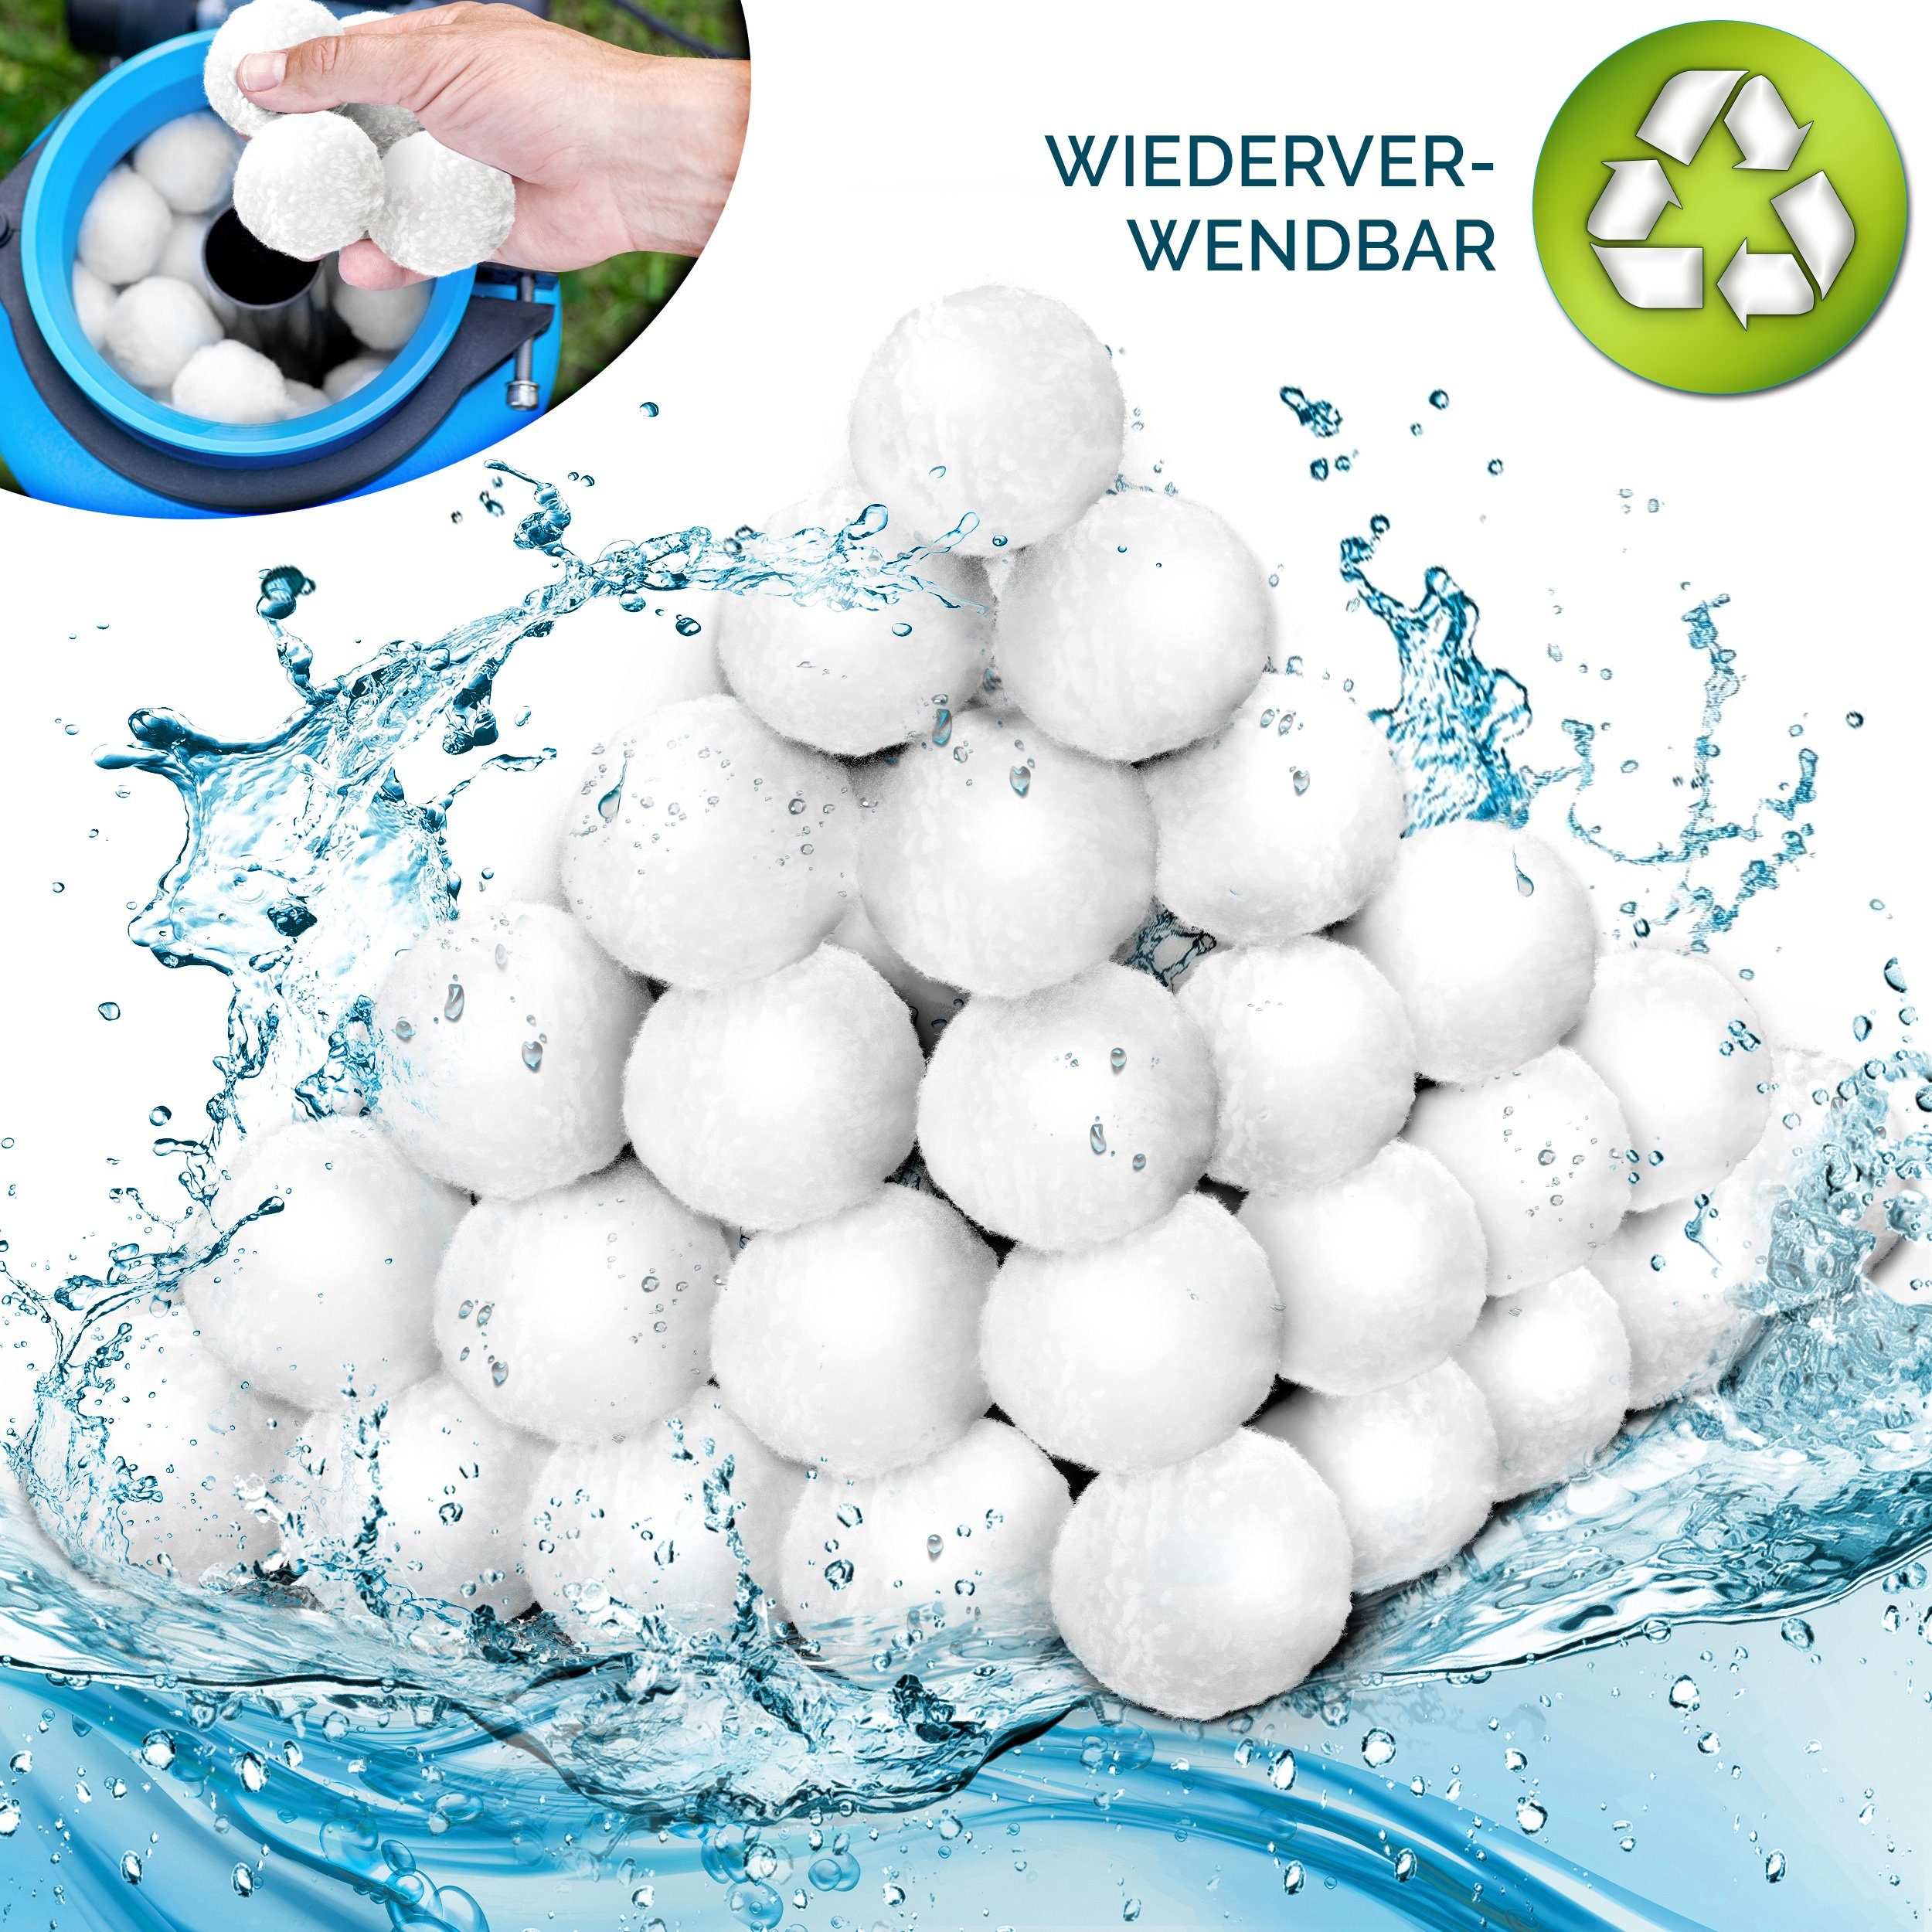 tillvex Filterbälle tillvex® 1400g Pool Filterbälle langlebige Filter Balls für glasklares, für alle gängigen Filtersysteme im Pool- und Spa-Bereich (ersetzt: Sandfilter, Quarzfilter), Filterbälle für Sandfilteranlage